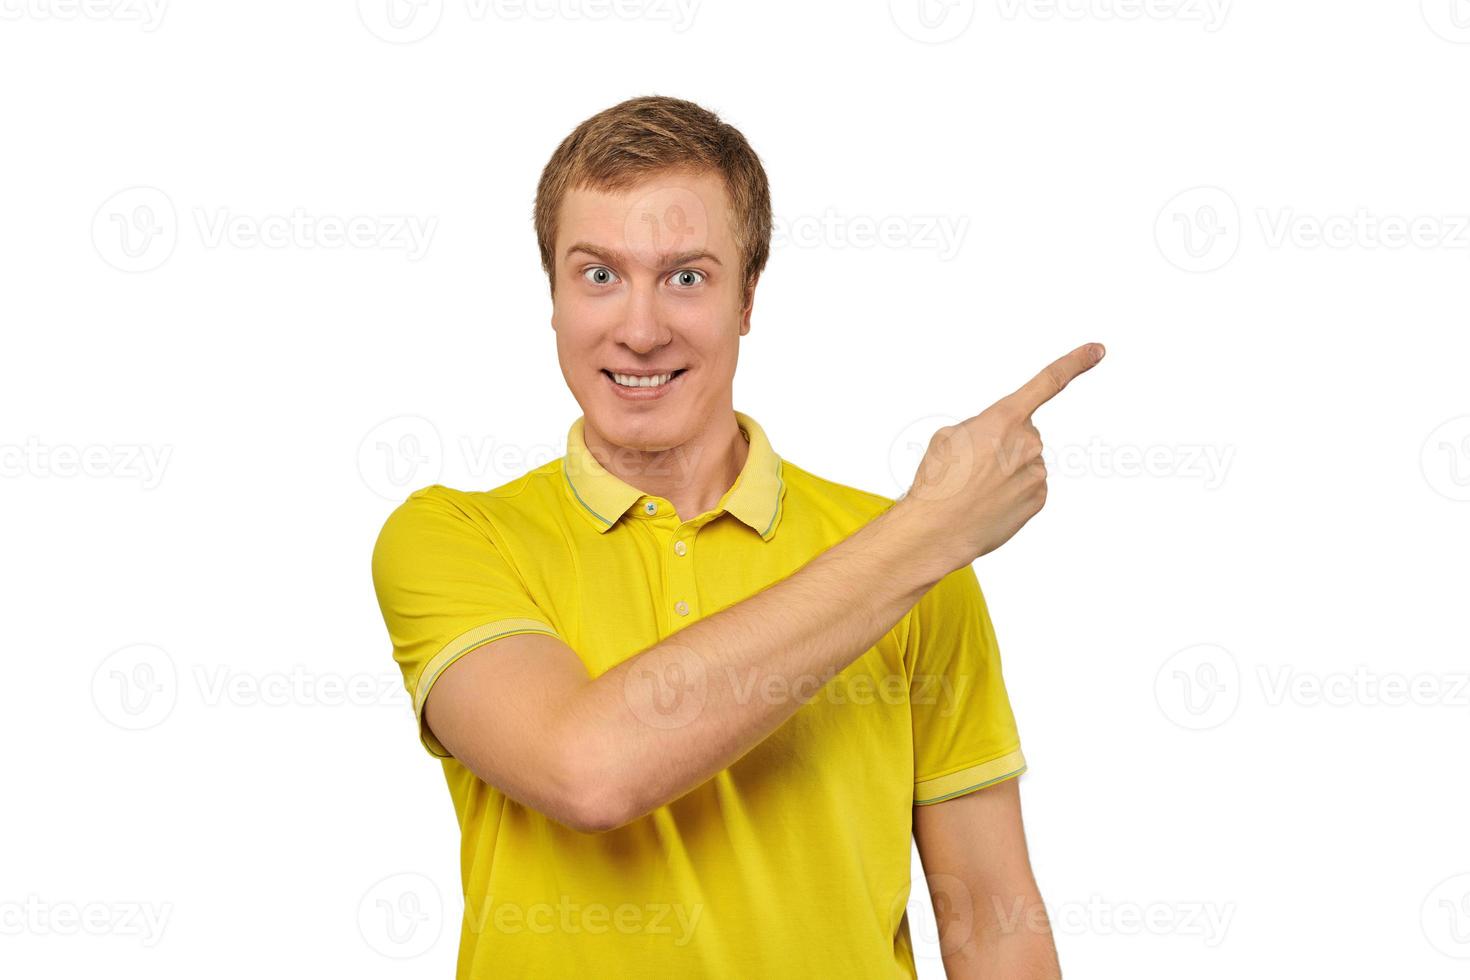 chico sonriente con cara graciosa en camiseta amarilla apuntando con el dedo a la derecha, fondo blanco foto